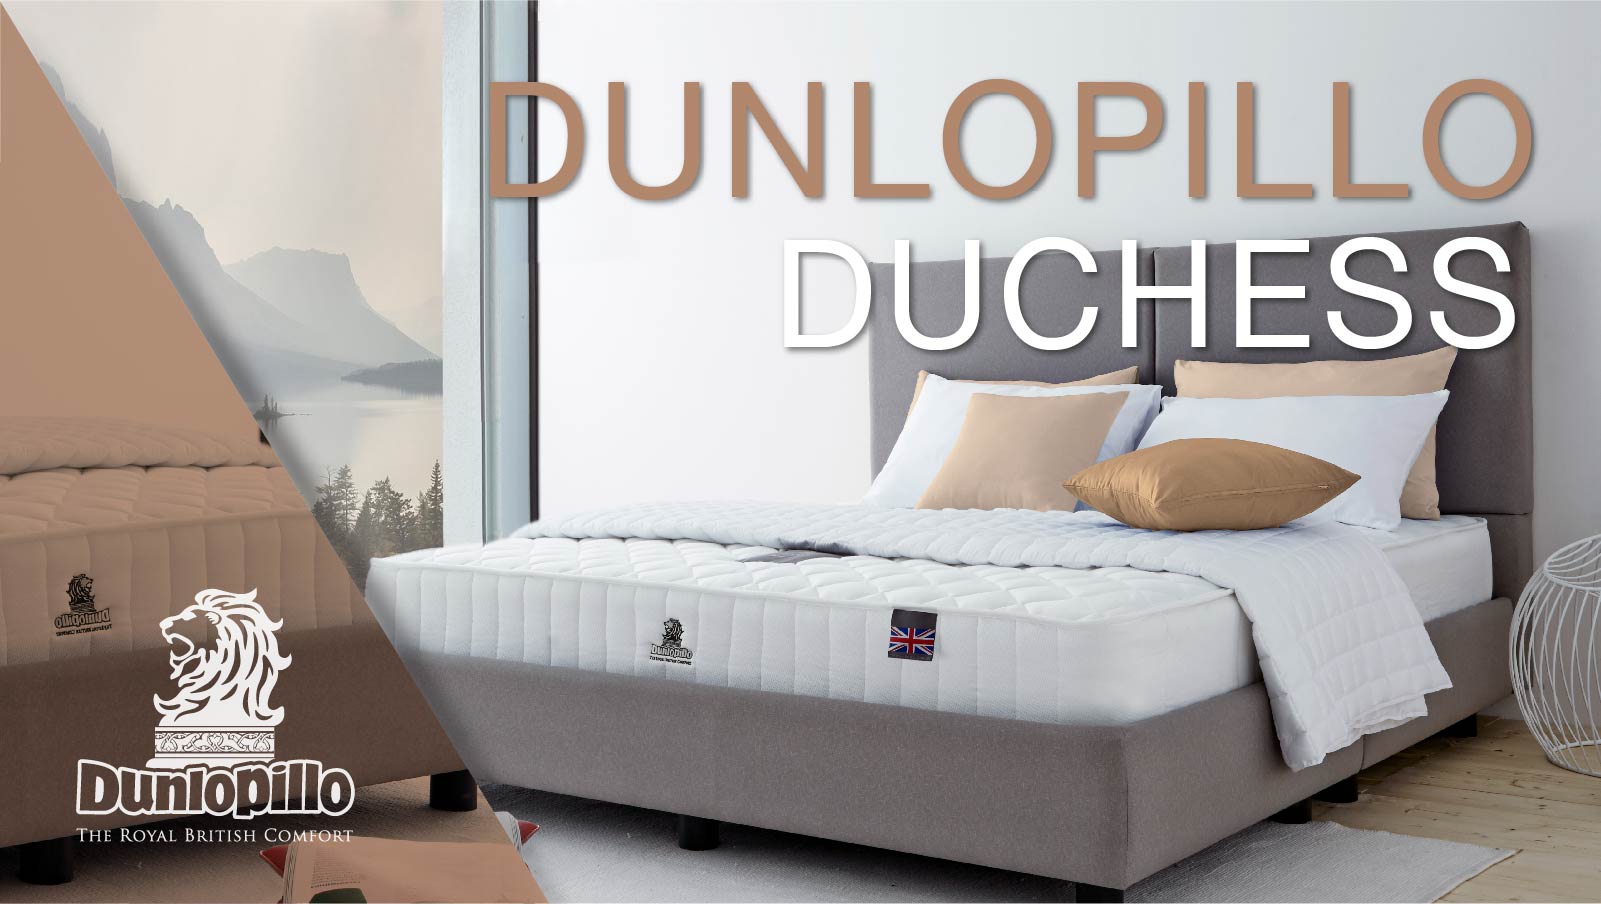 Dunlopillo Mattress - Duchess